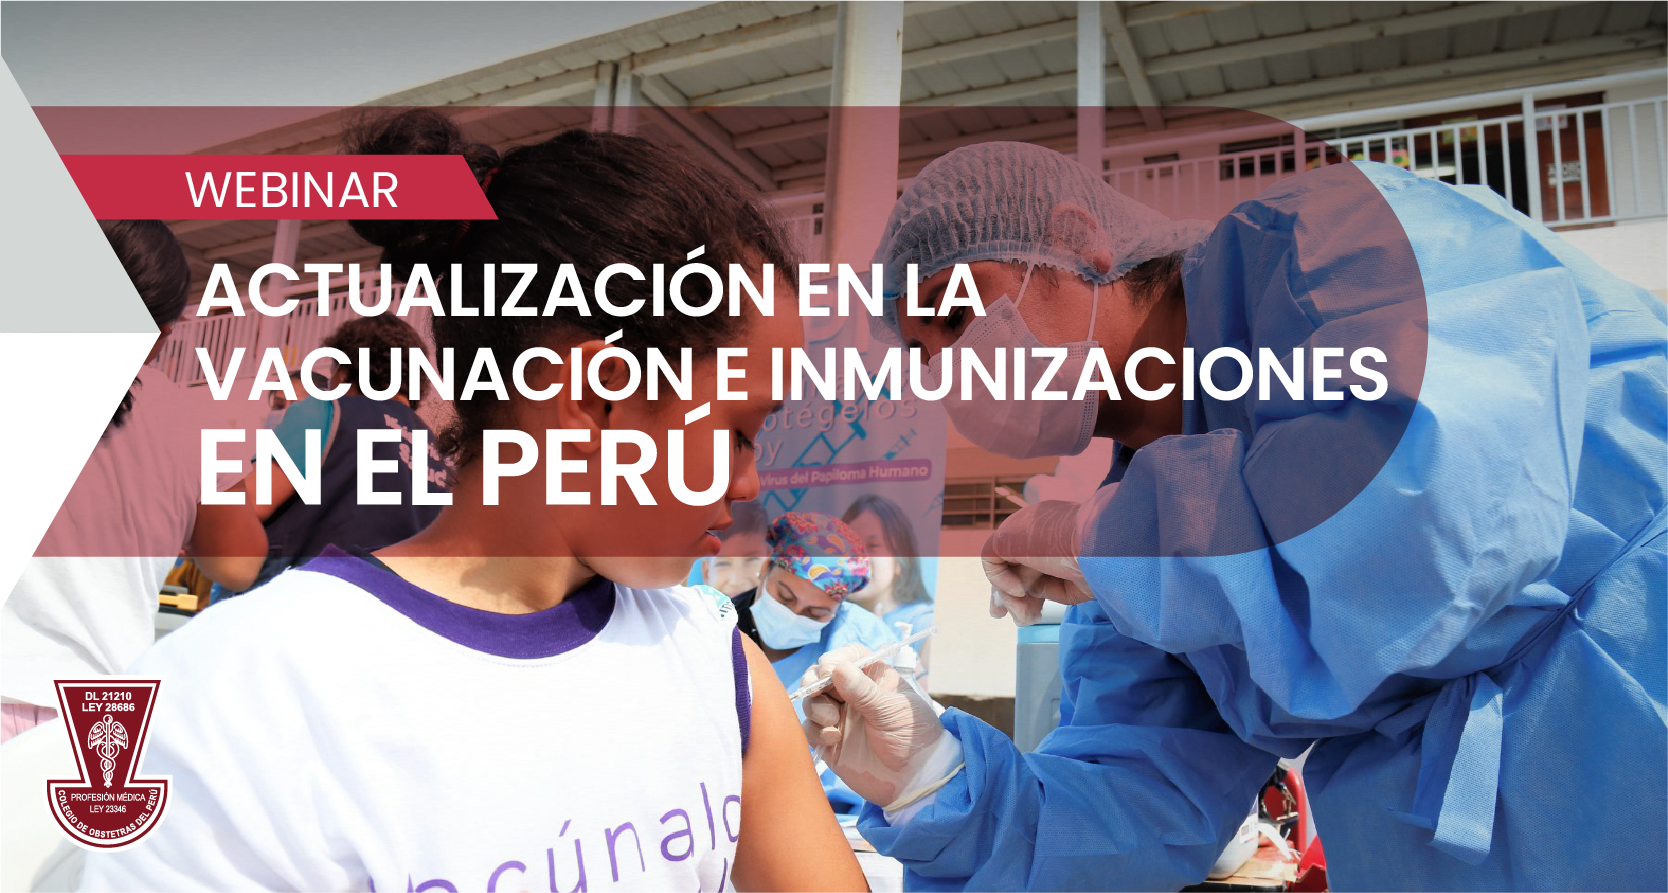 Webinar “Actualización en la vacunación e inmunizaciones en el Perú”